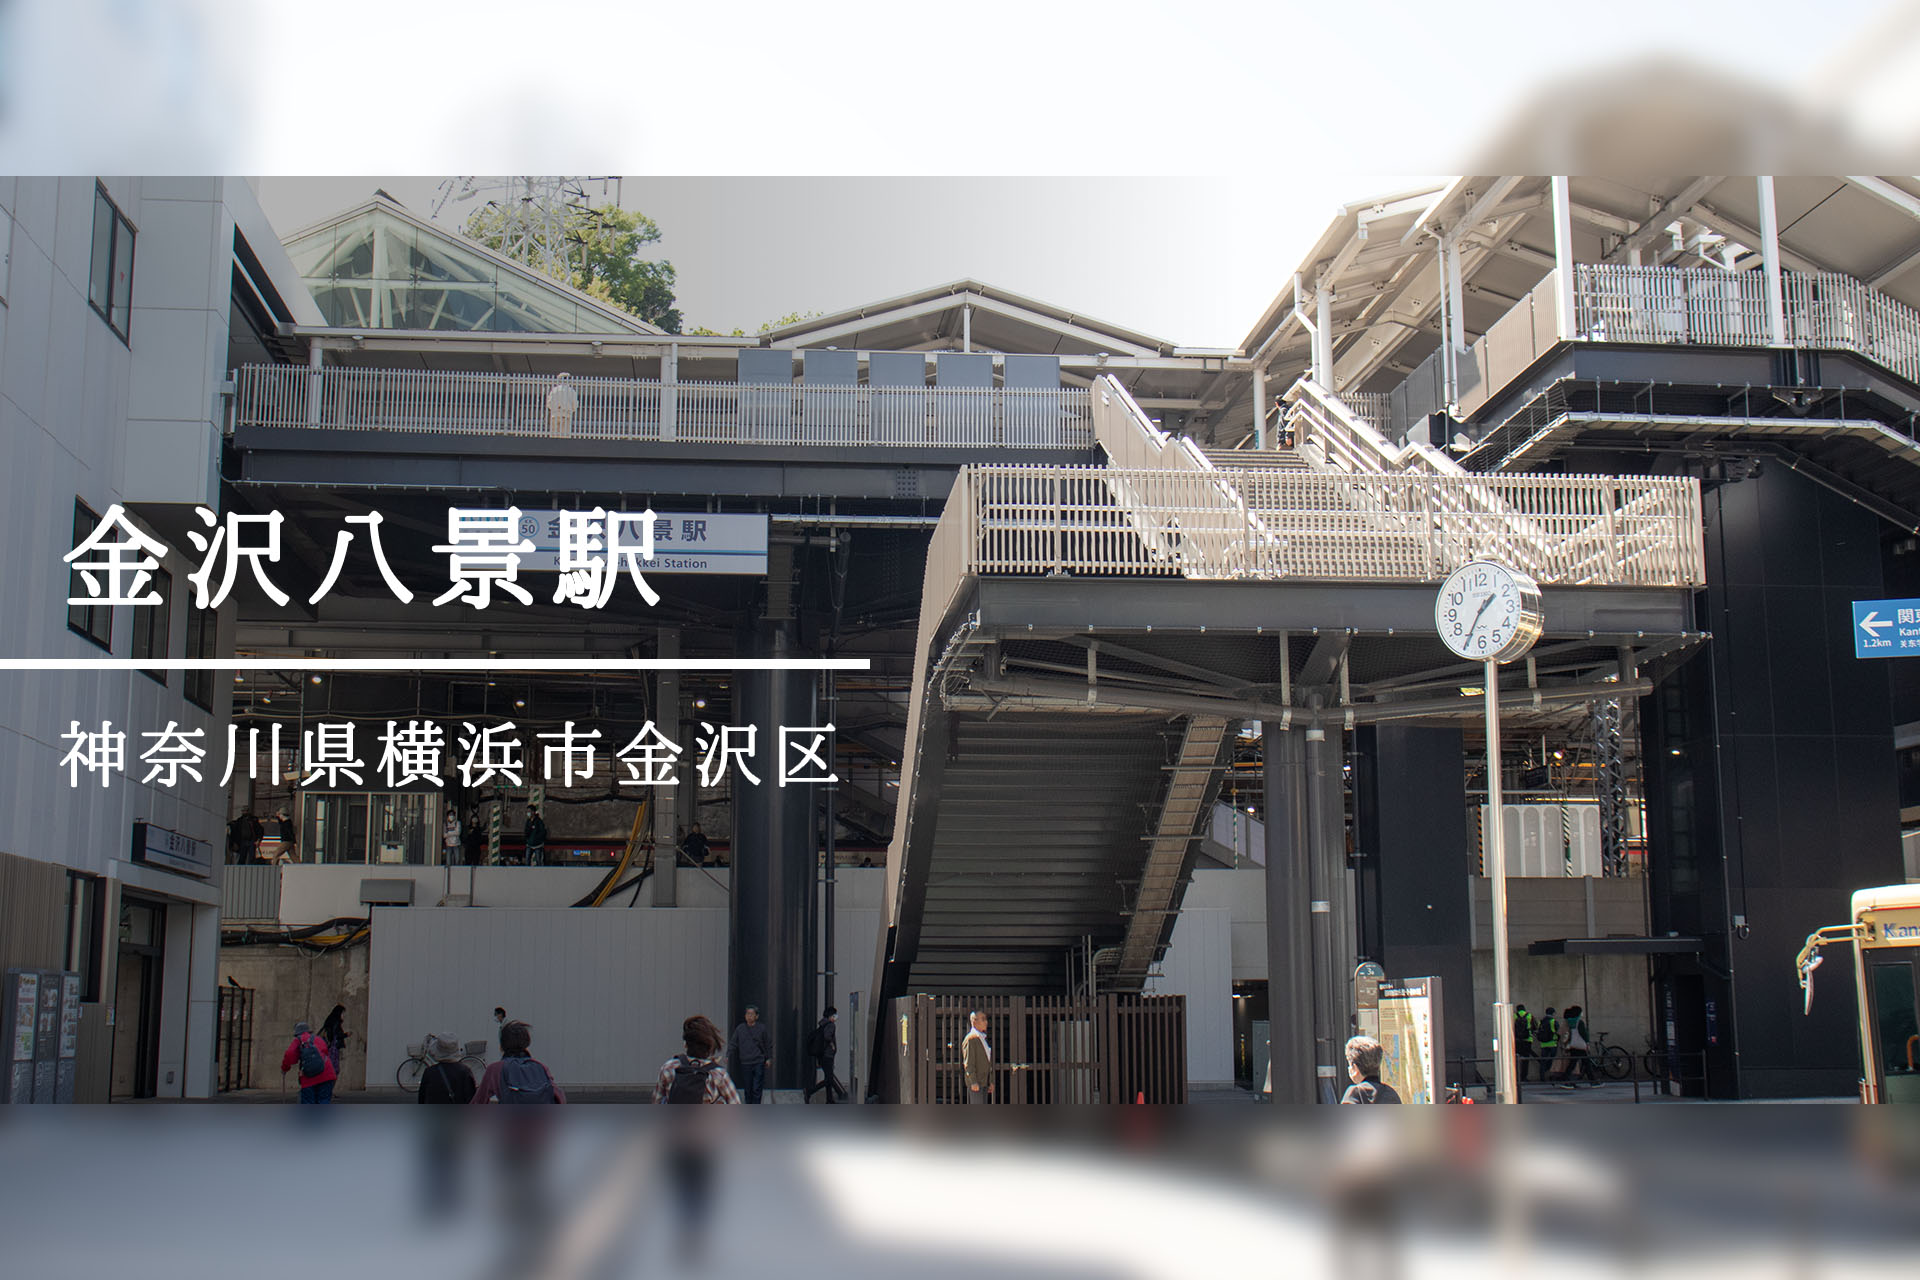 金沢八景駅 ―浮世絵師に愛された景勝地のいま―